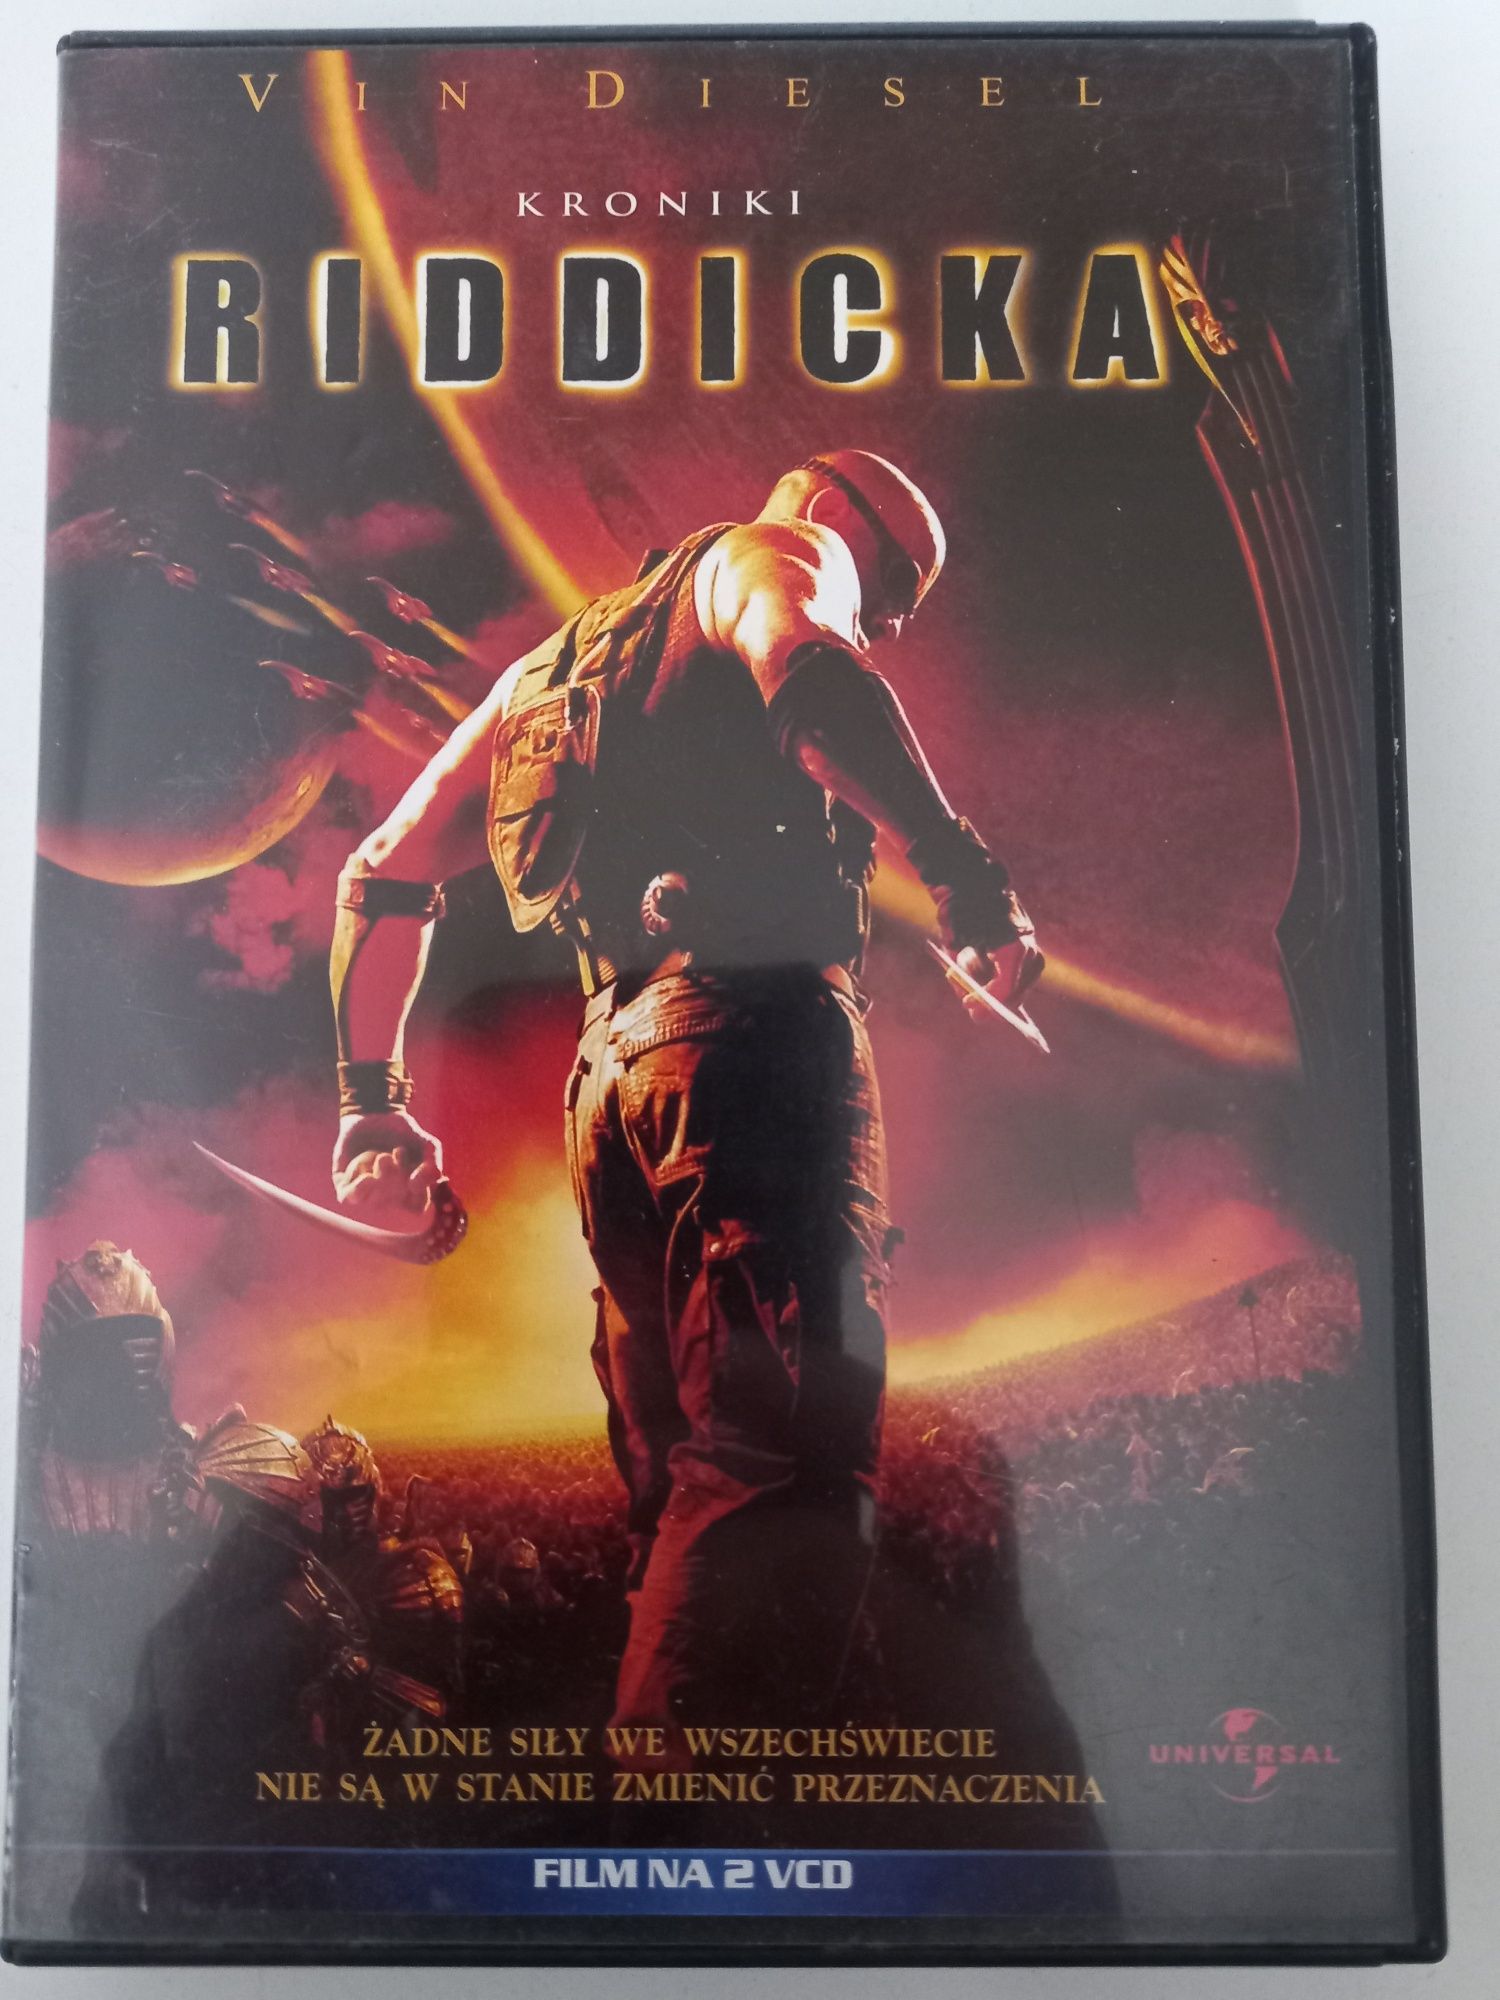 Film Kroniki Riddicka Video CD